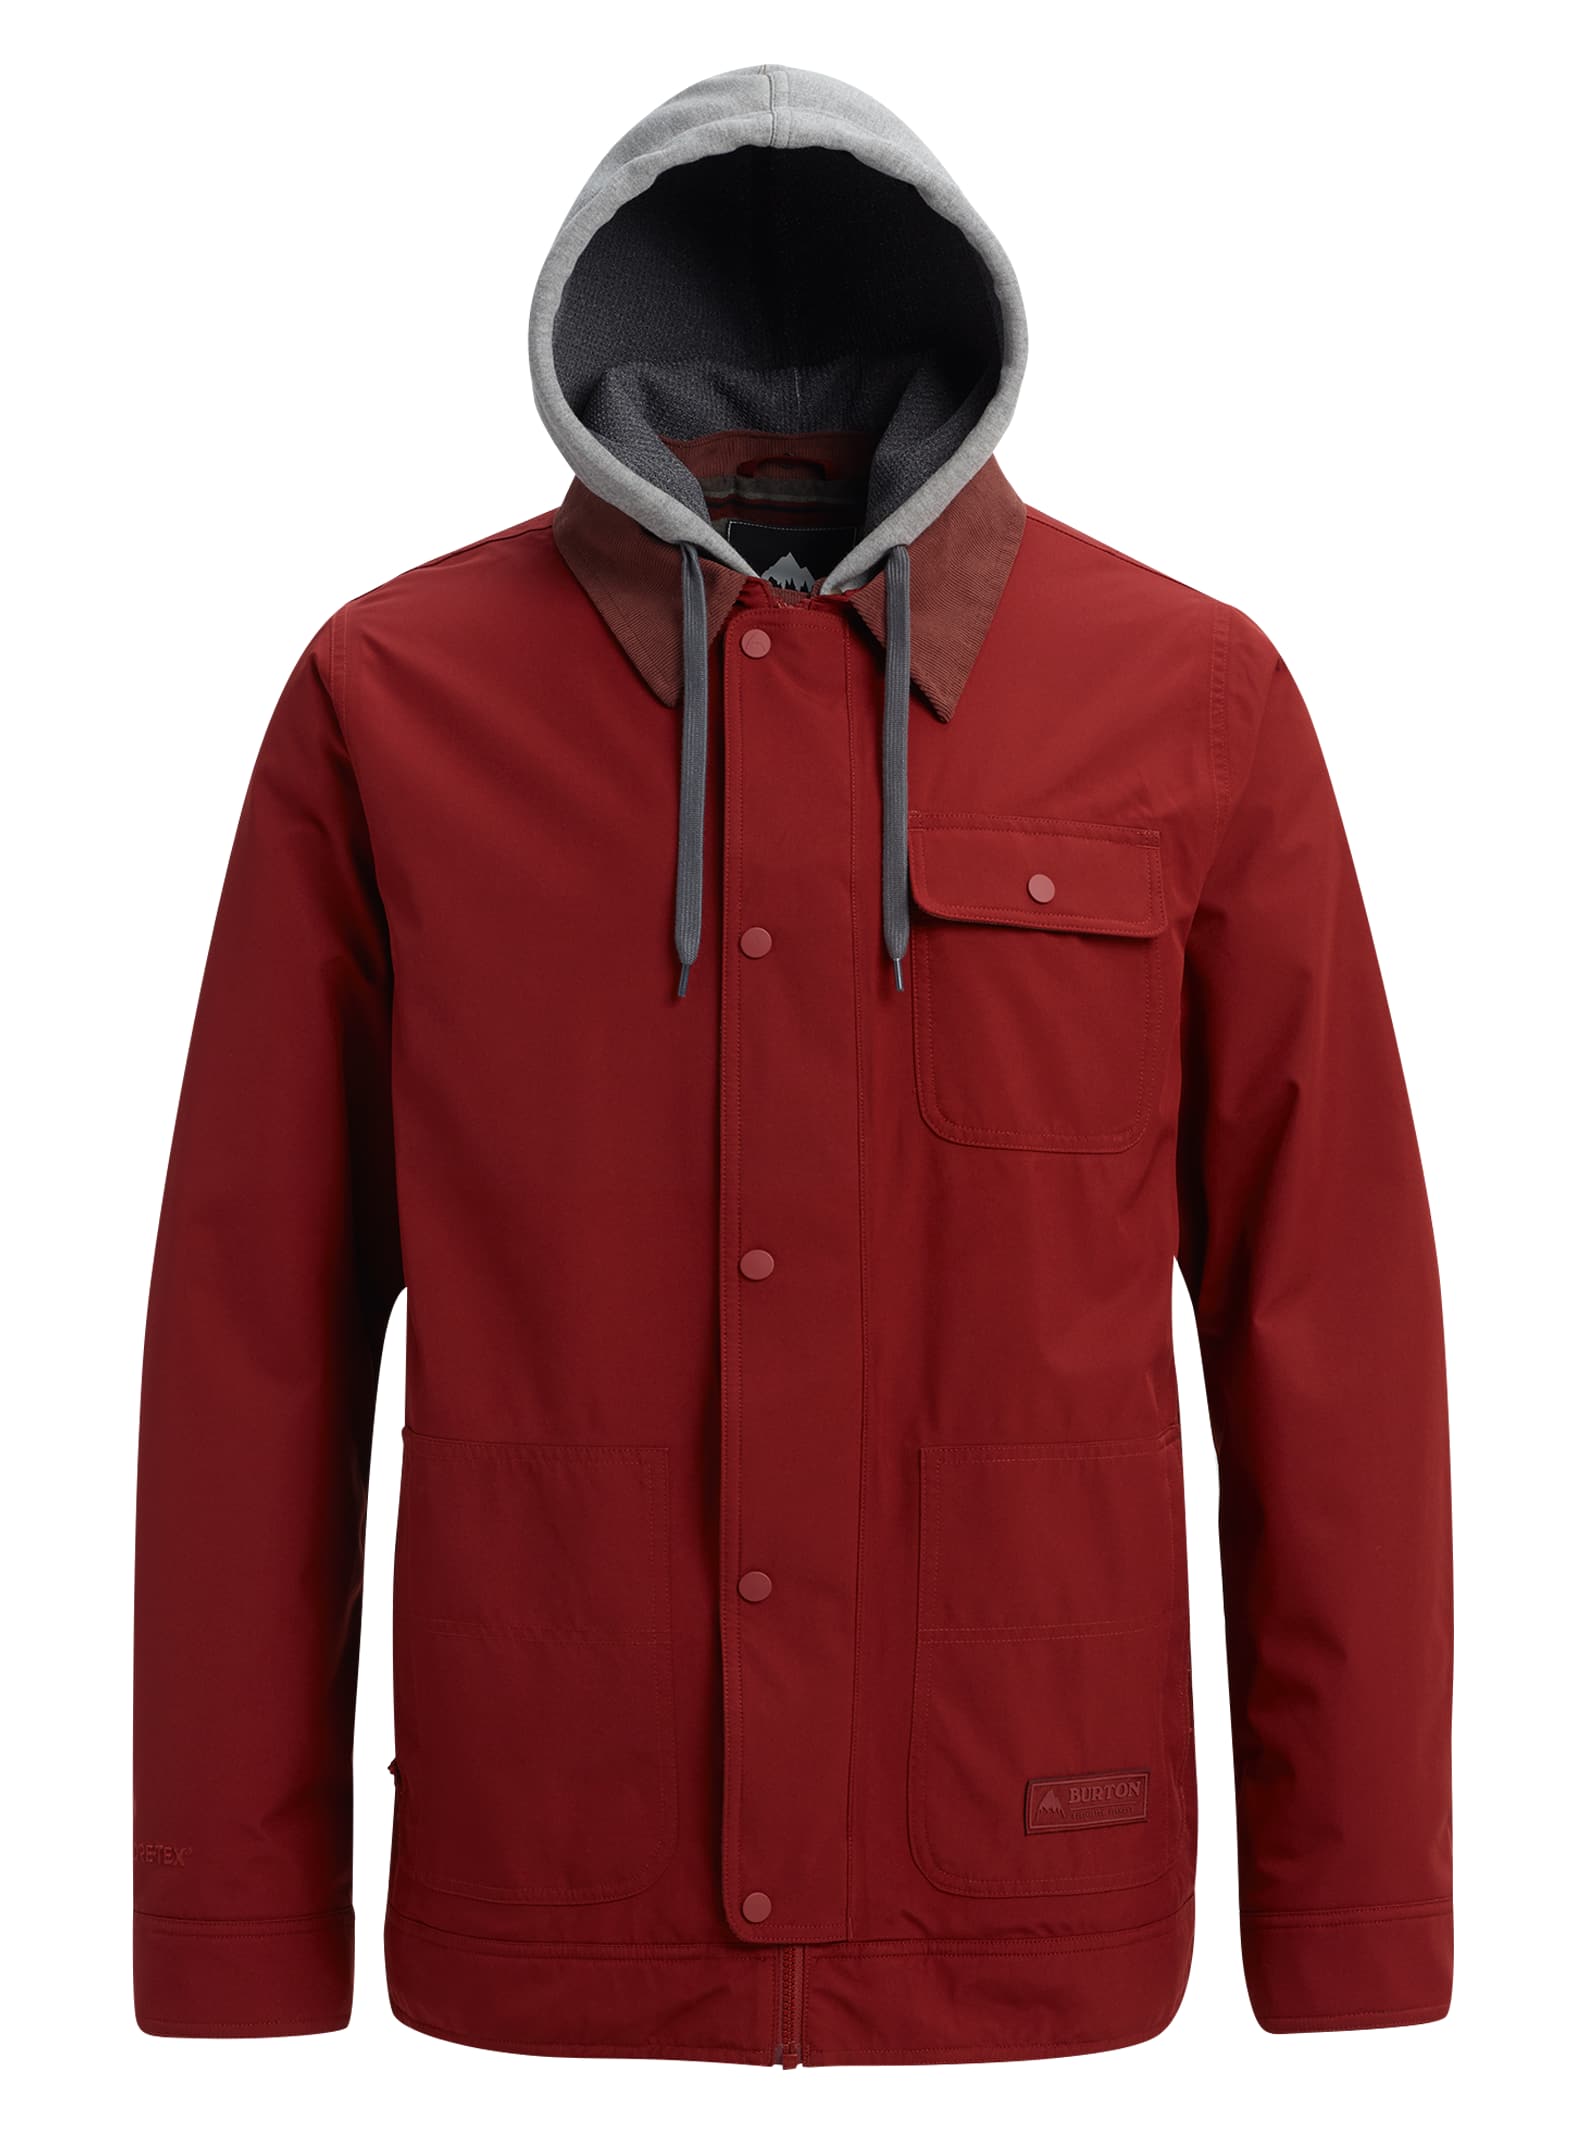 Men's Burton GORE-TEX Dunmore Jacket